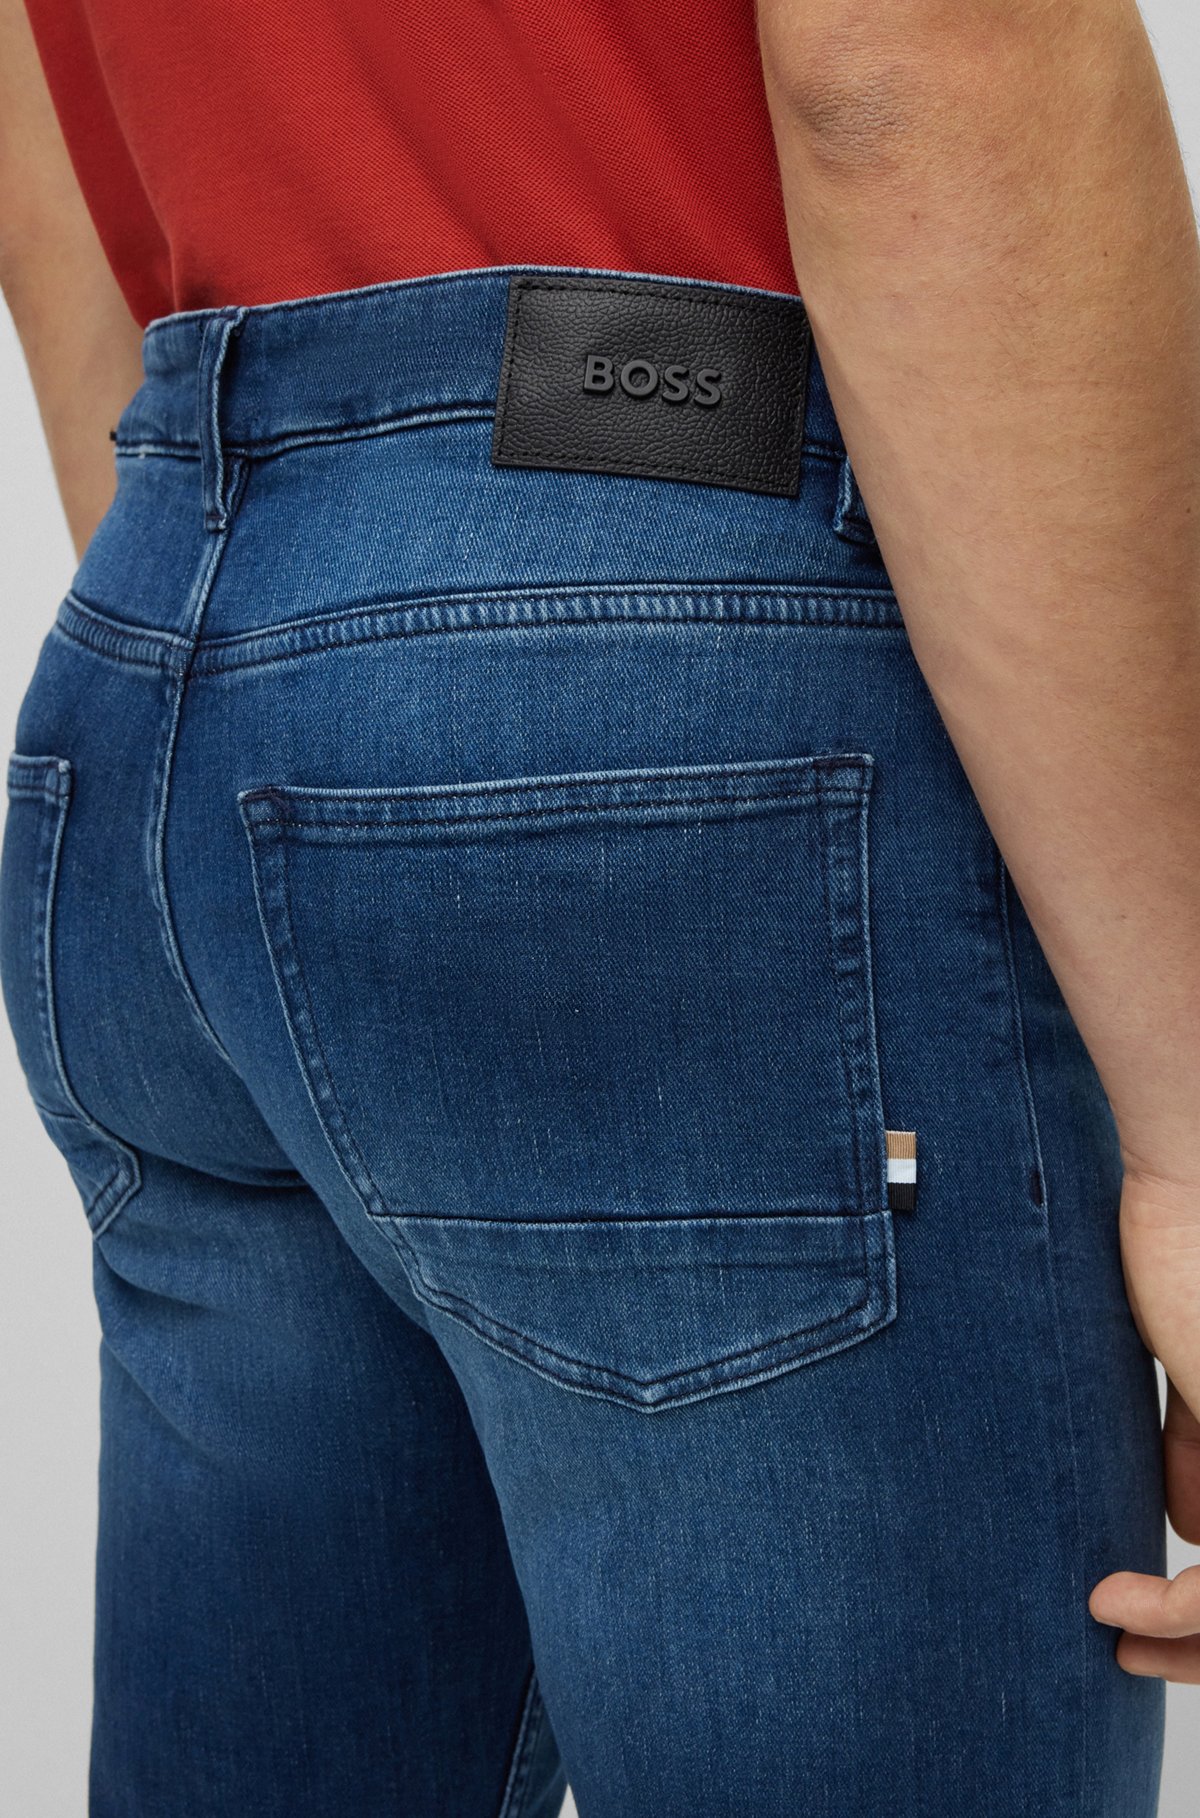 Leeds bidragyder besøgende BOSS - Slim-fit jeans in super-soft blue Italian denim